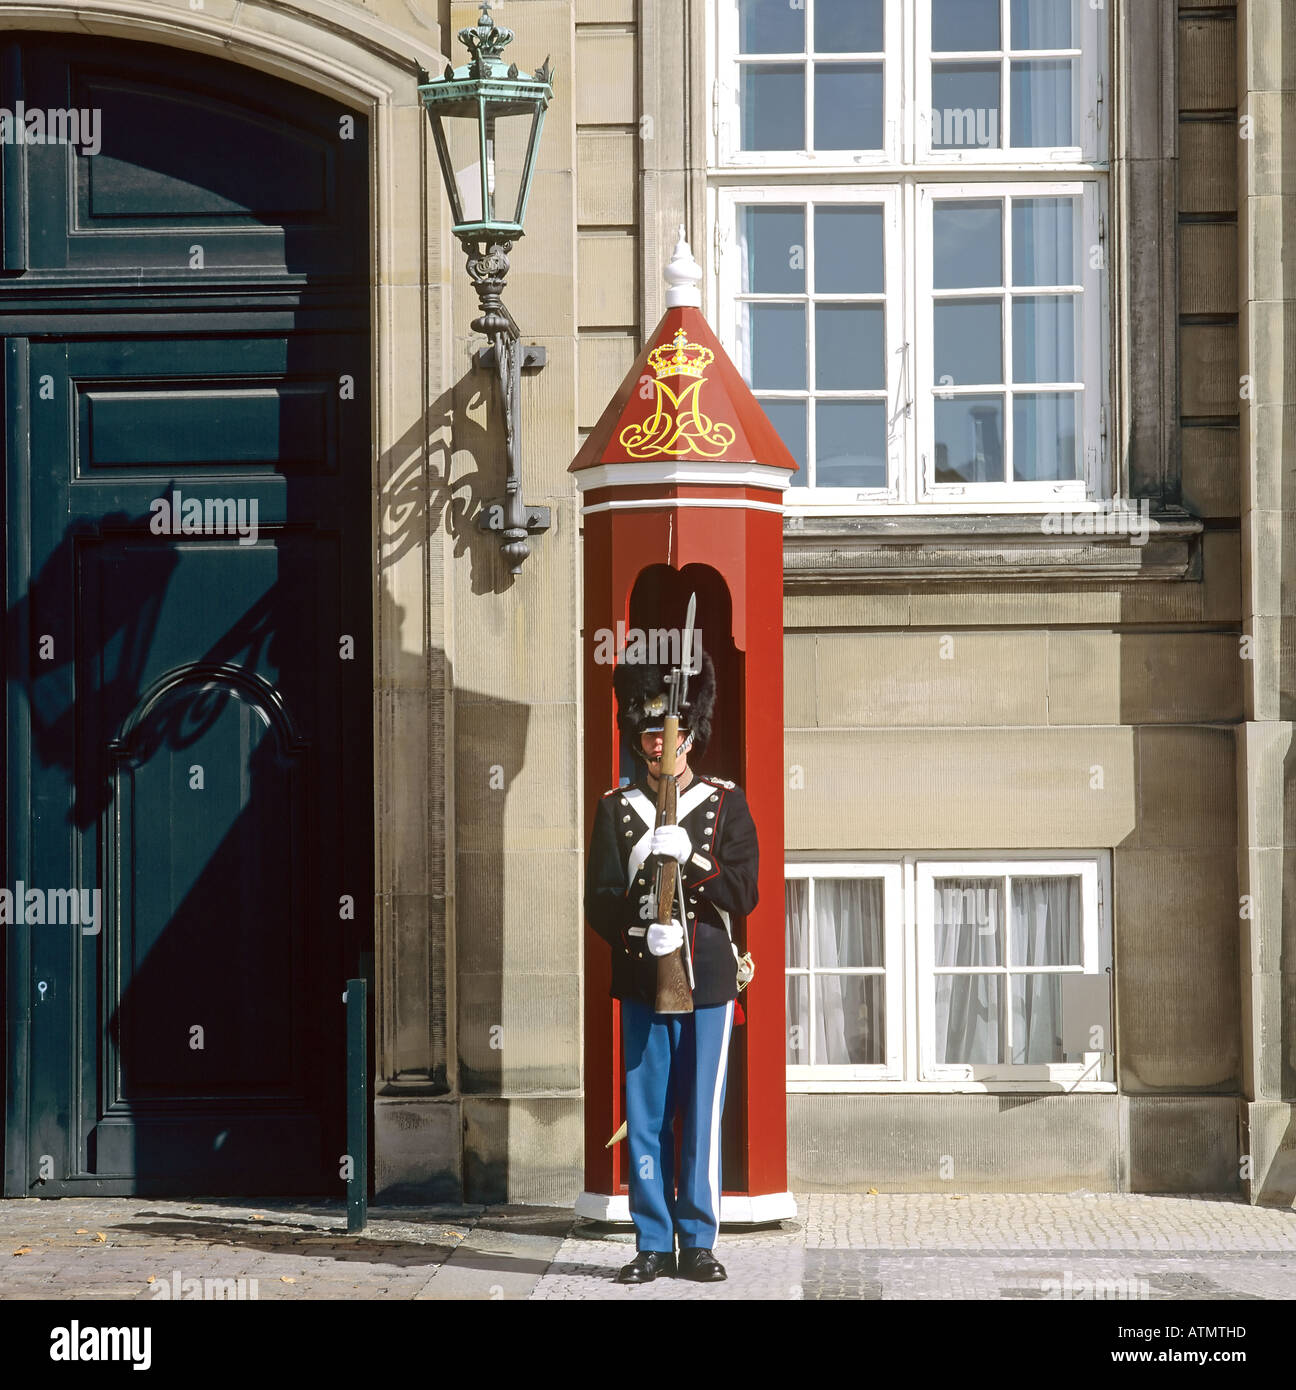 Royal life guard at sentry box, Amalienborg palace, Copenhagen, Denmark Stock Photo